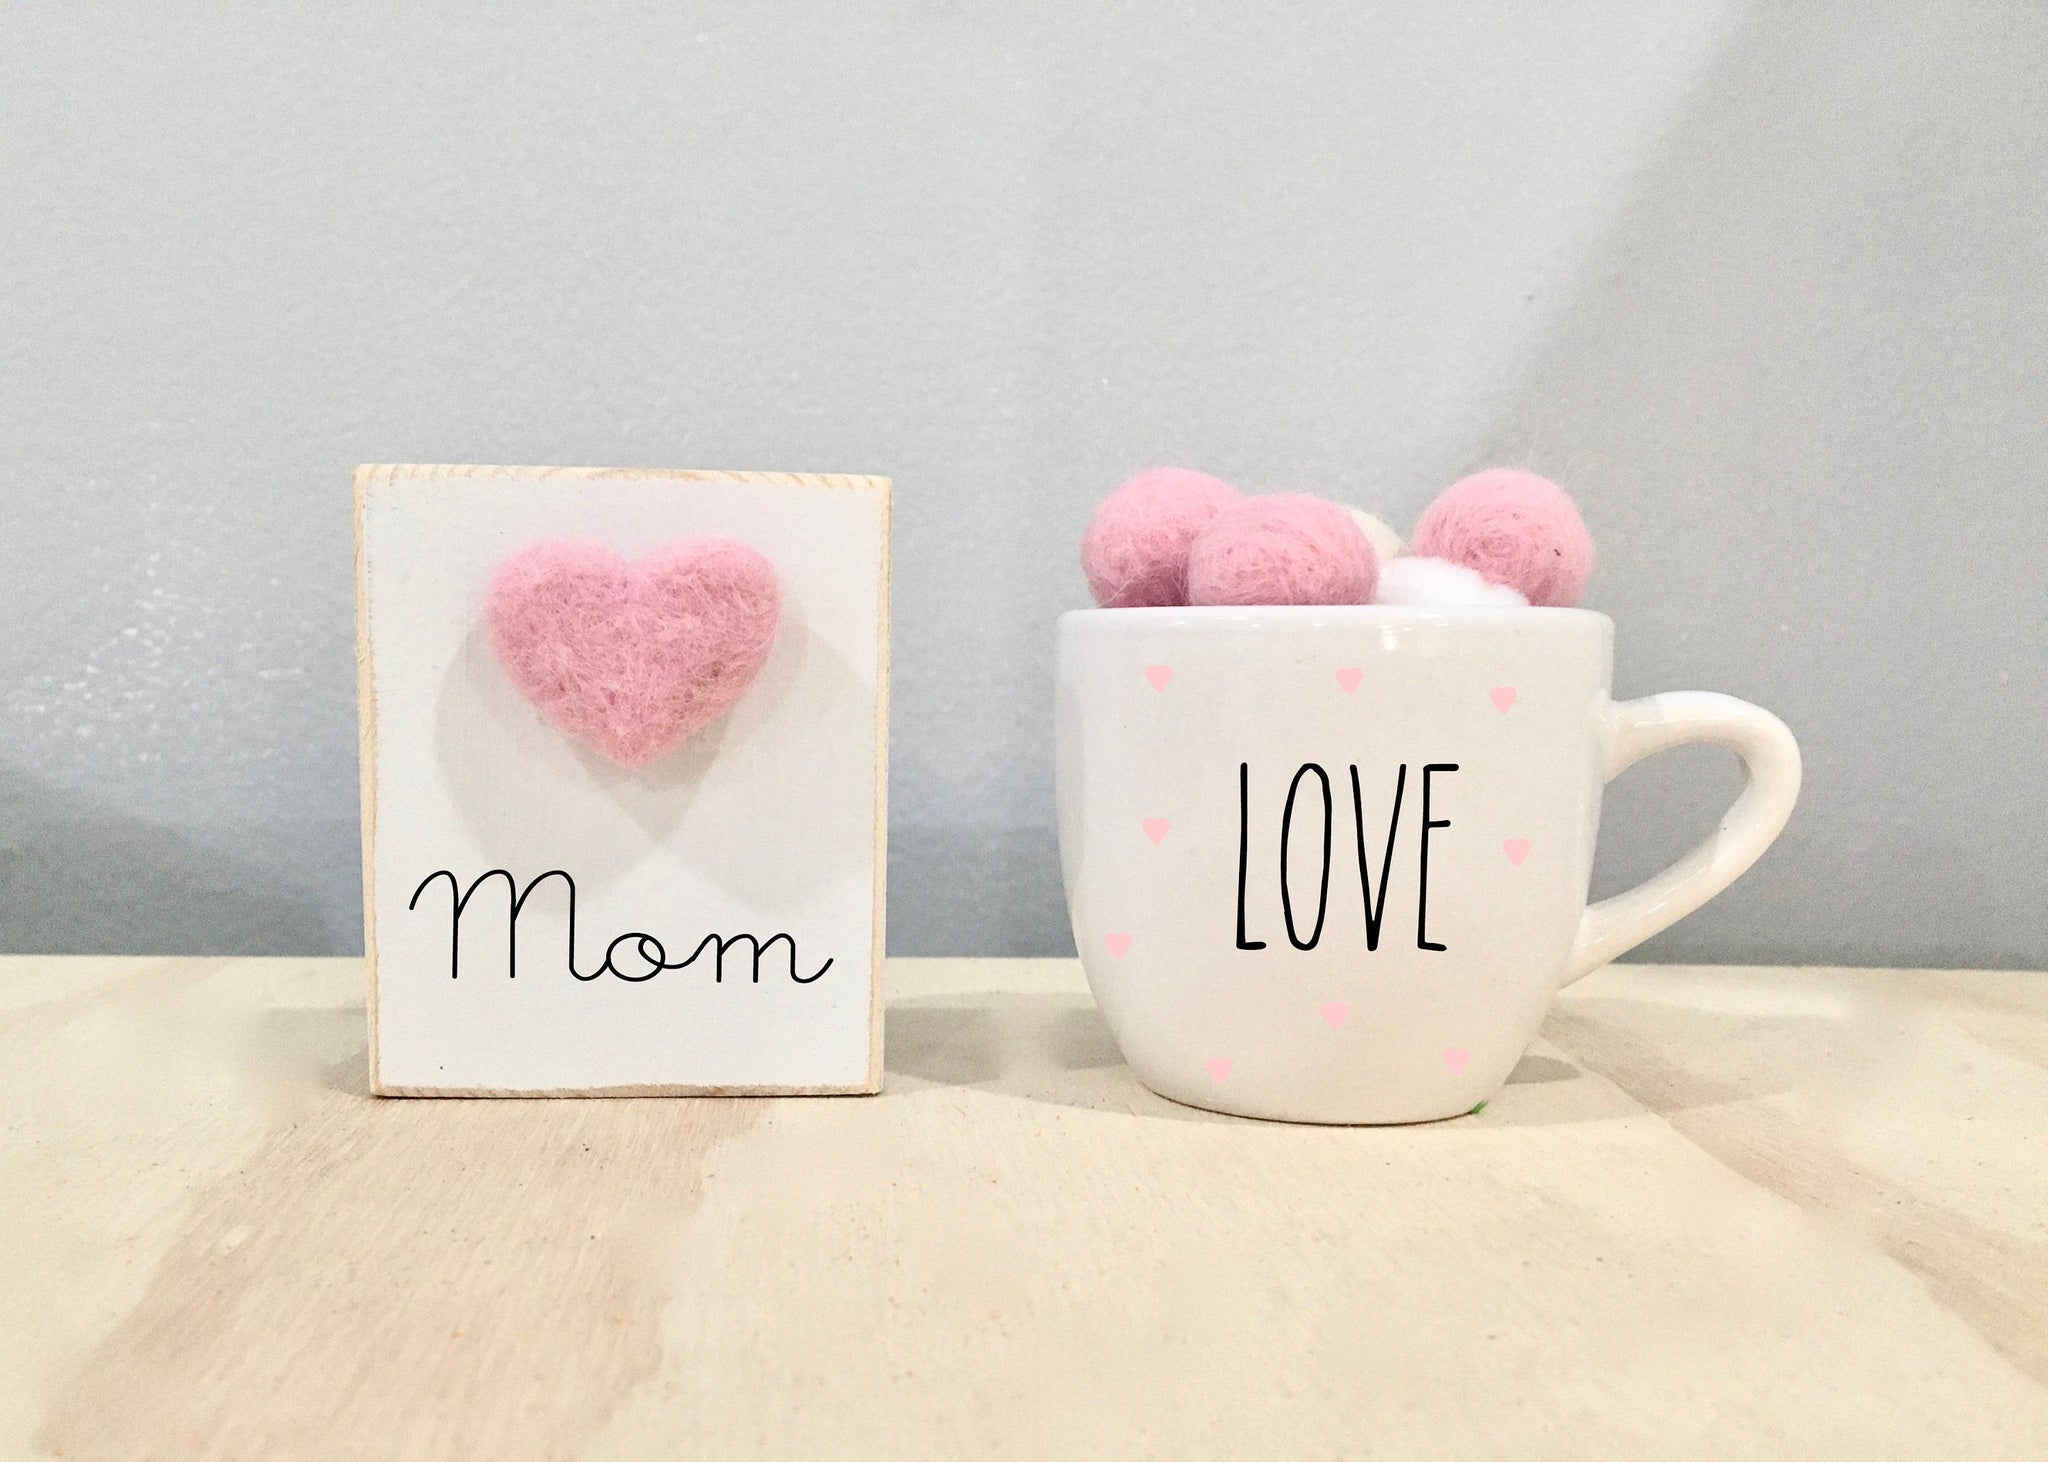 Mother's day gift, Tiered tray sign, Mom coffee mug, mini mug, Tiered tray decor, Wool heart, Love mug, Gift for mom, Mug and sign set